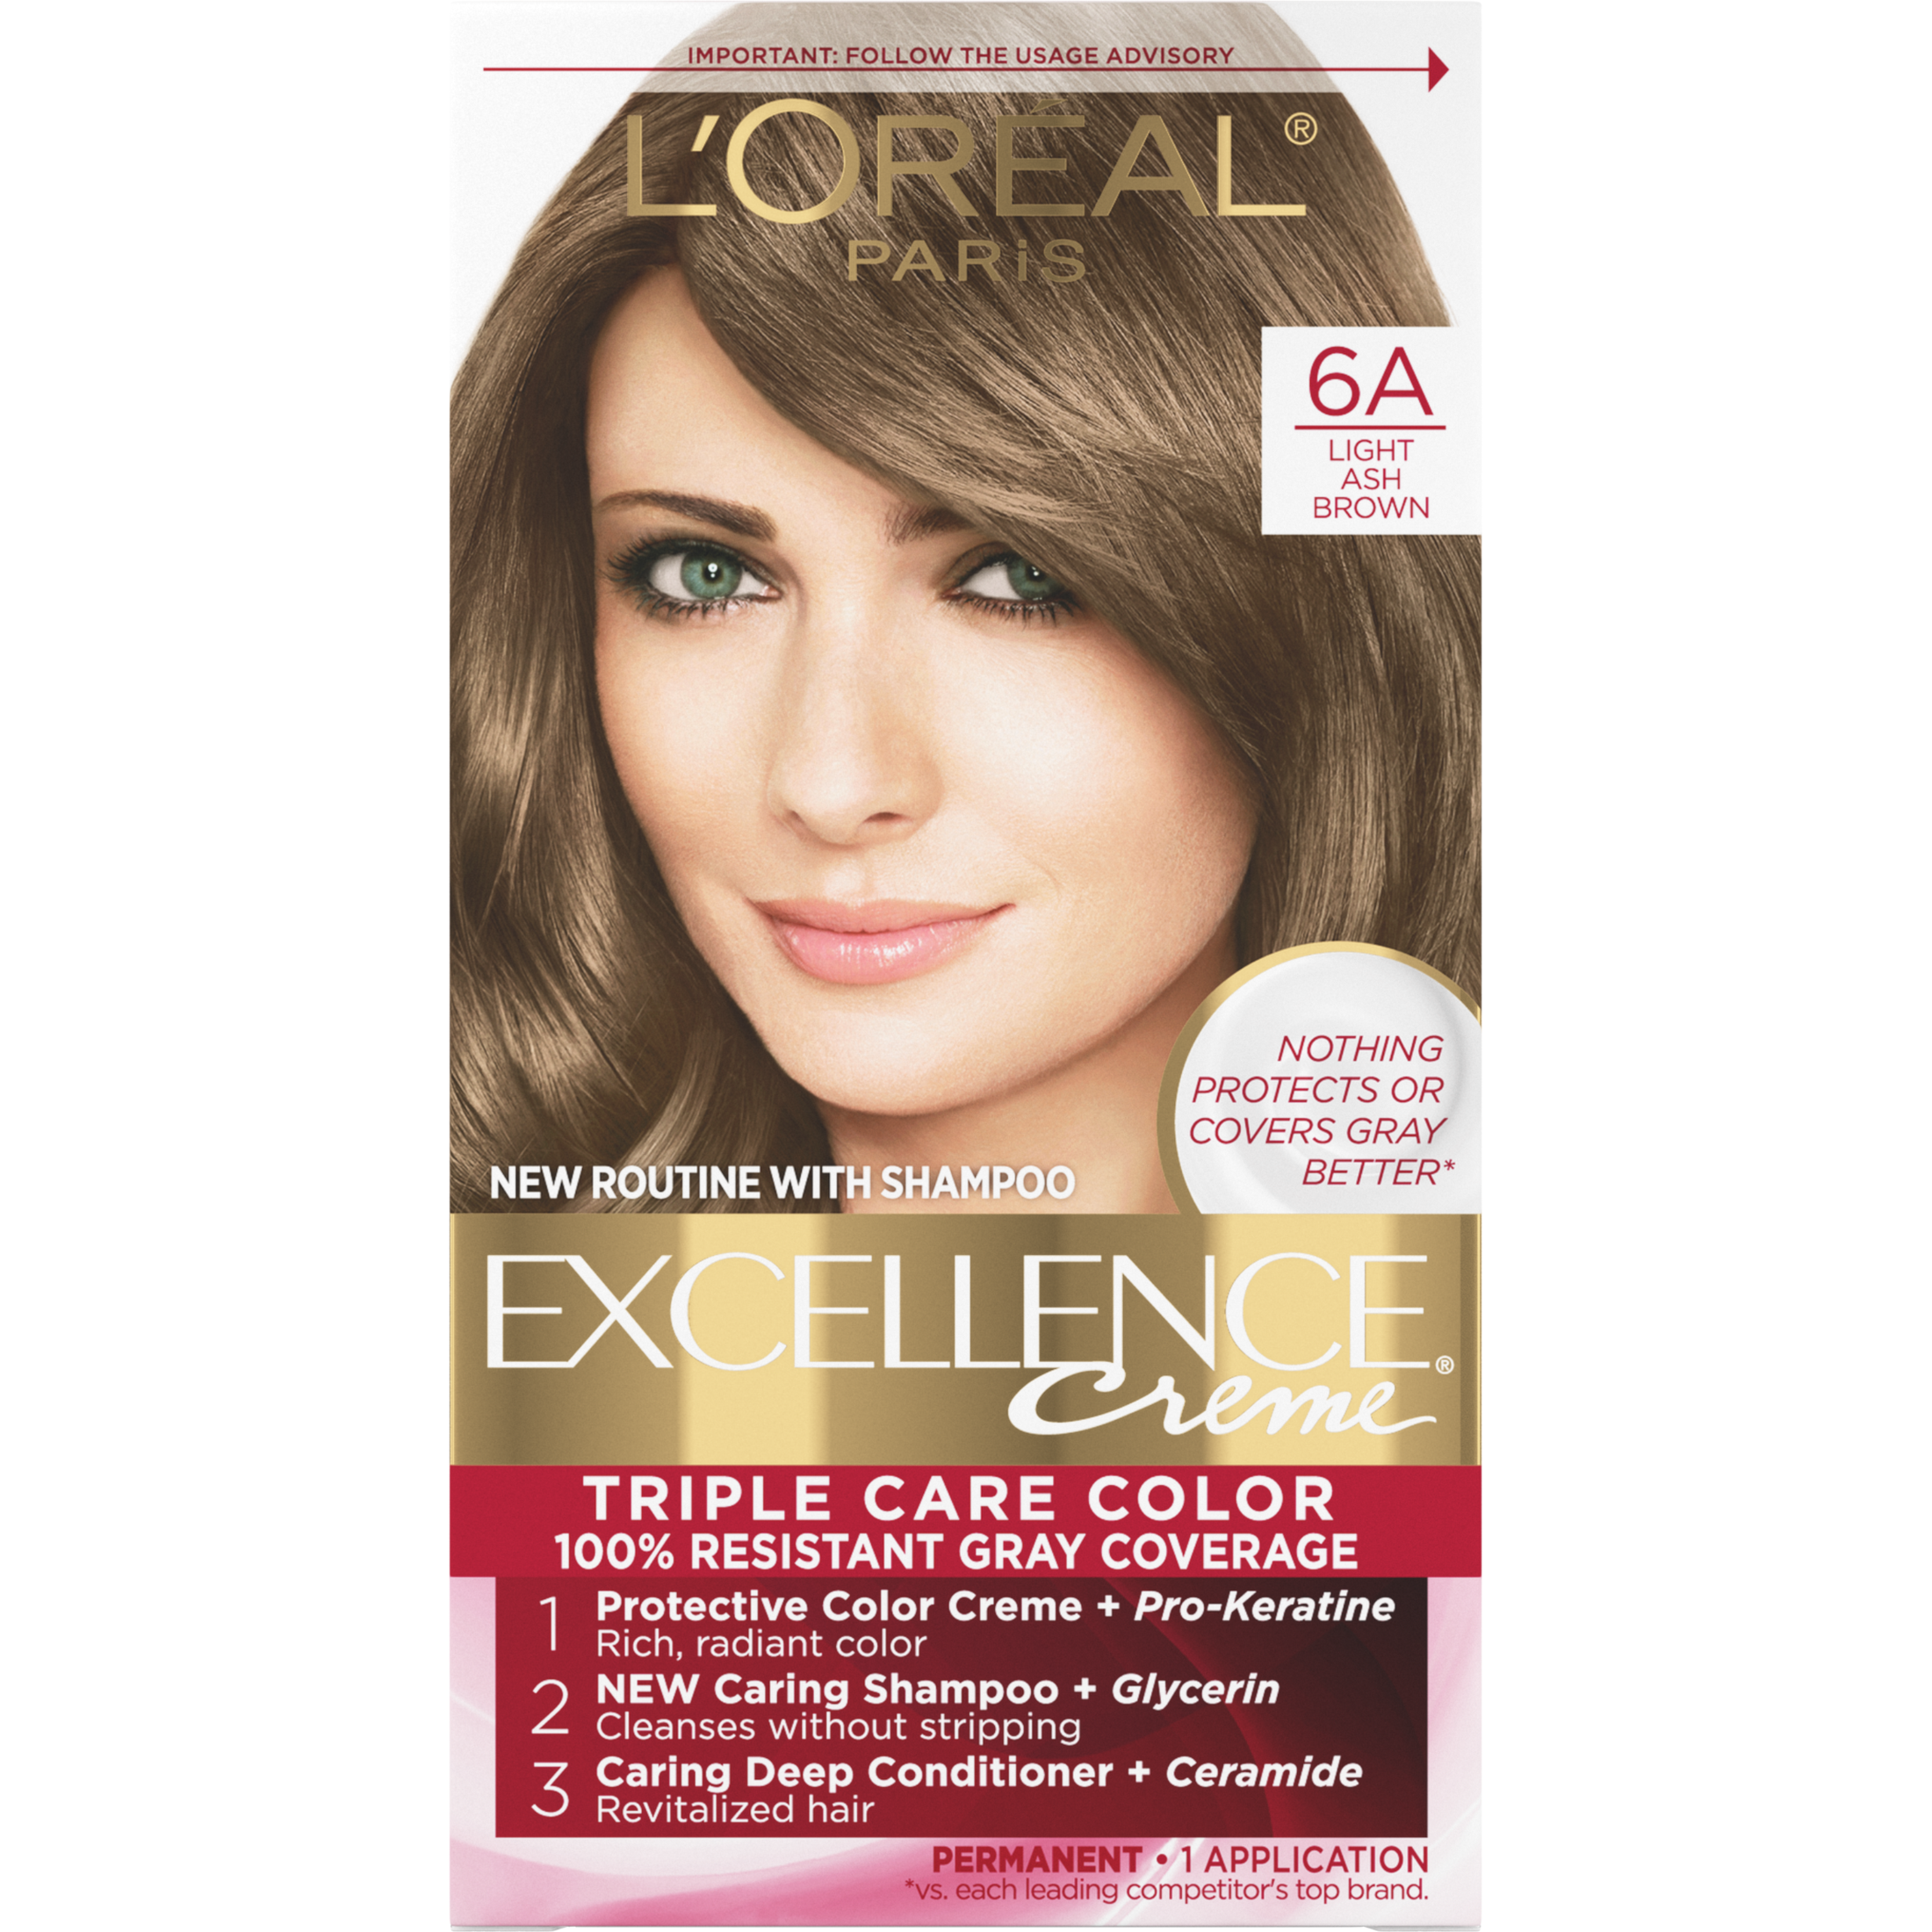 L'Oreal Paris Excellence Creme Permanent Hair Color, 6A Light Ash Brown - image 1 of 8